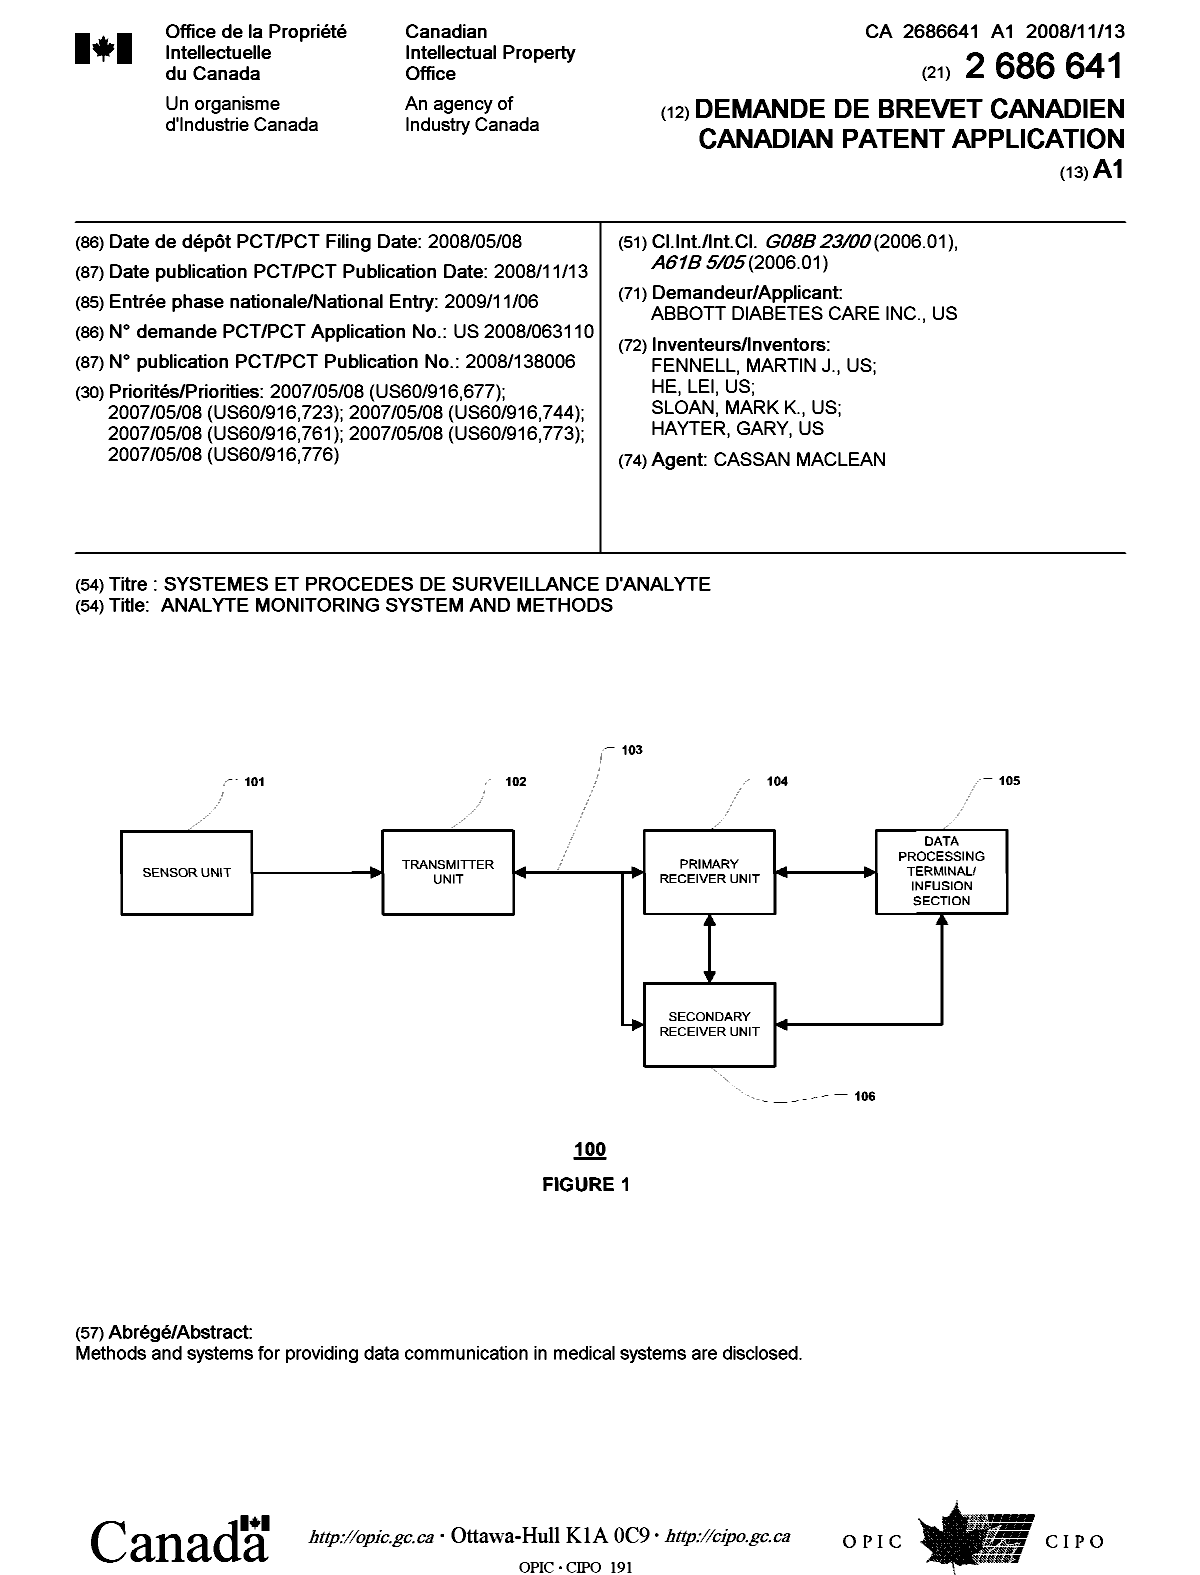 Document de brevet canadien 2686641. Page couverture 20100111. Image 1 de 1